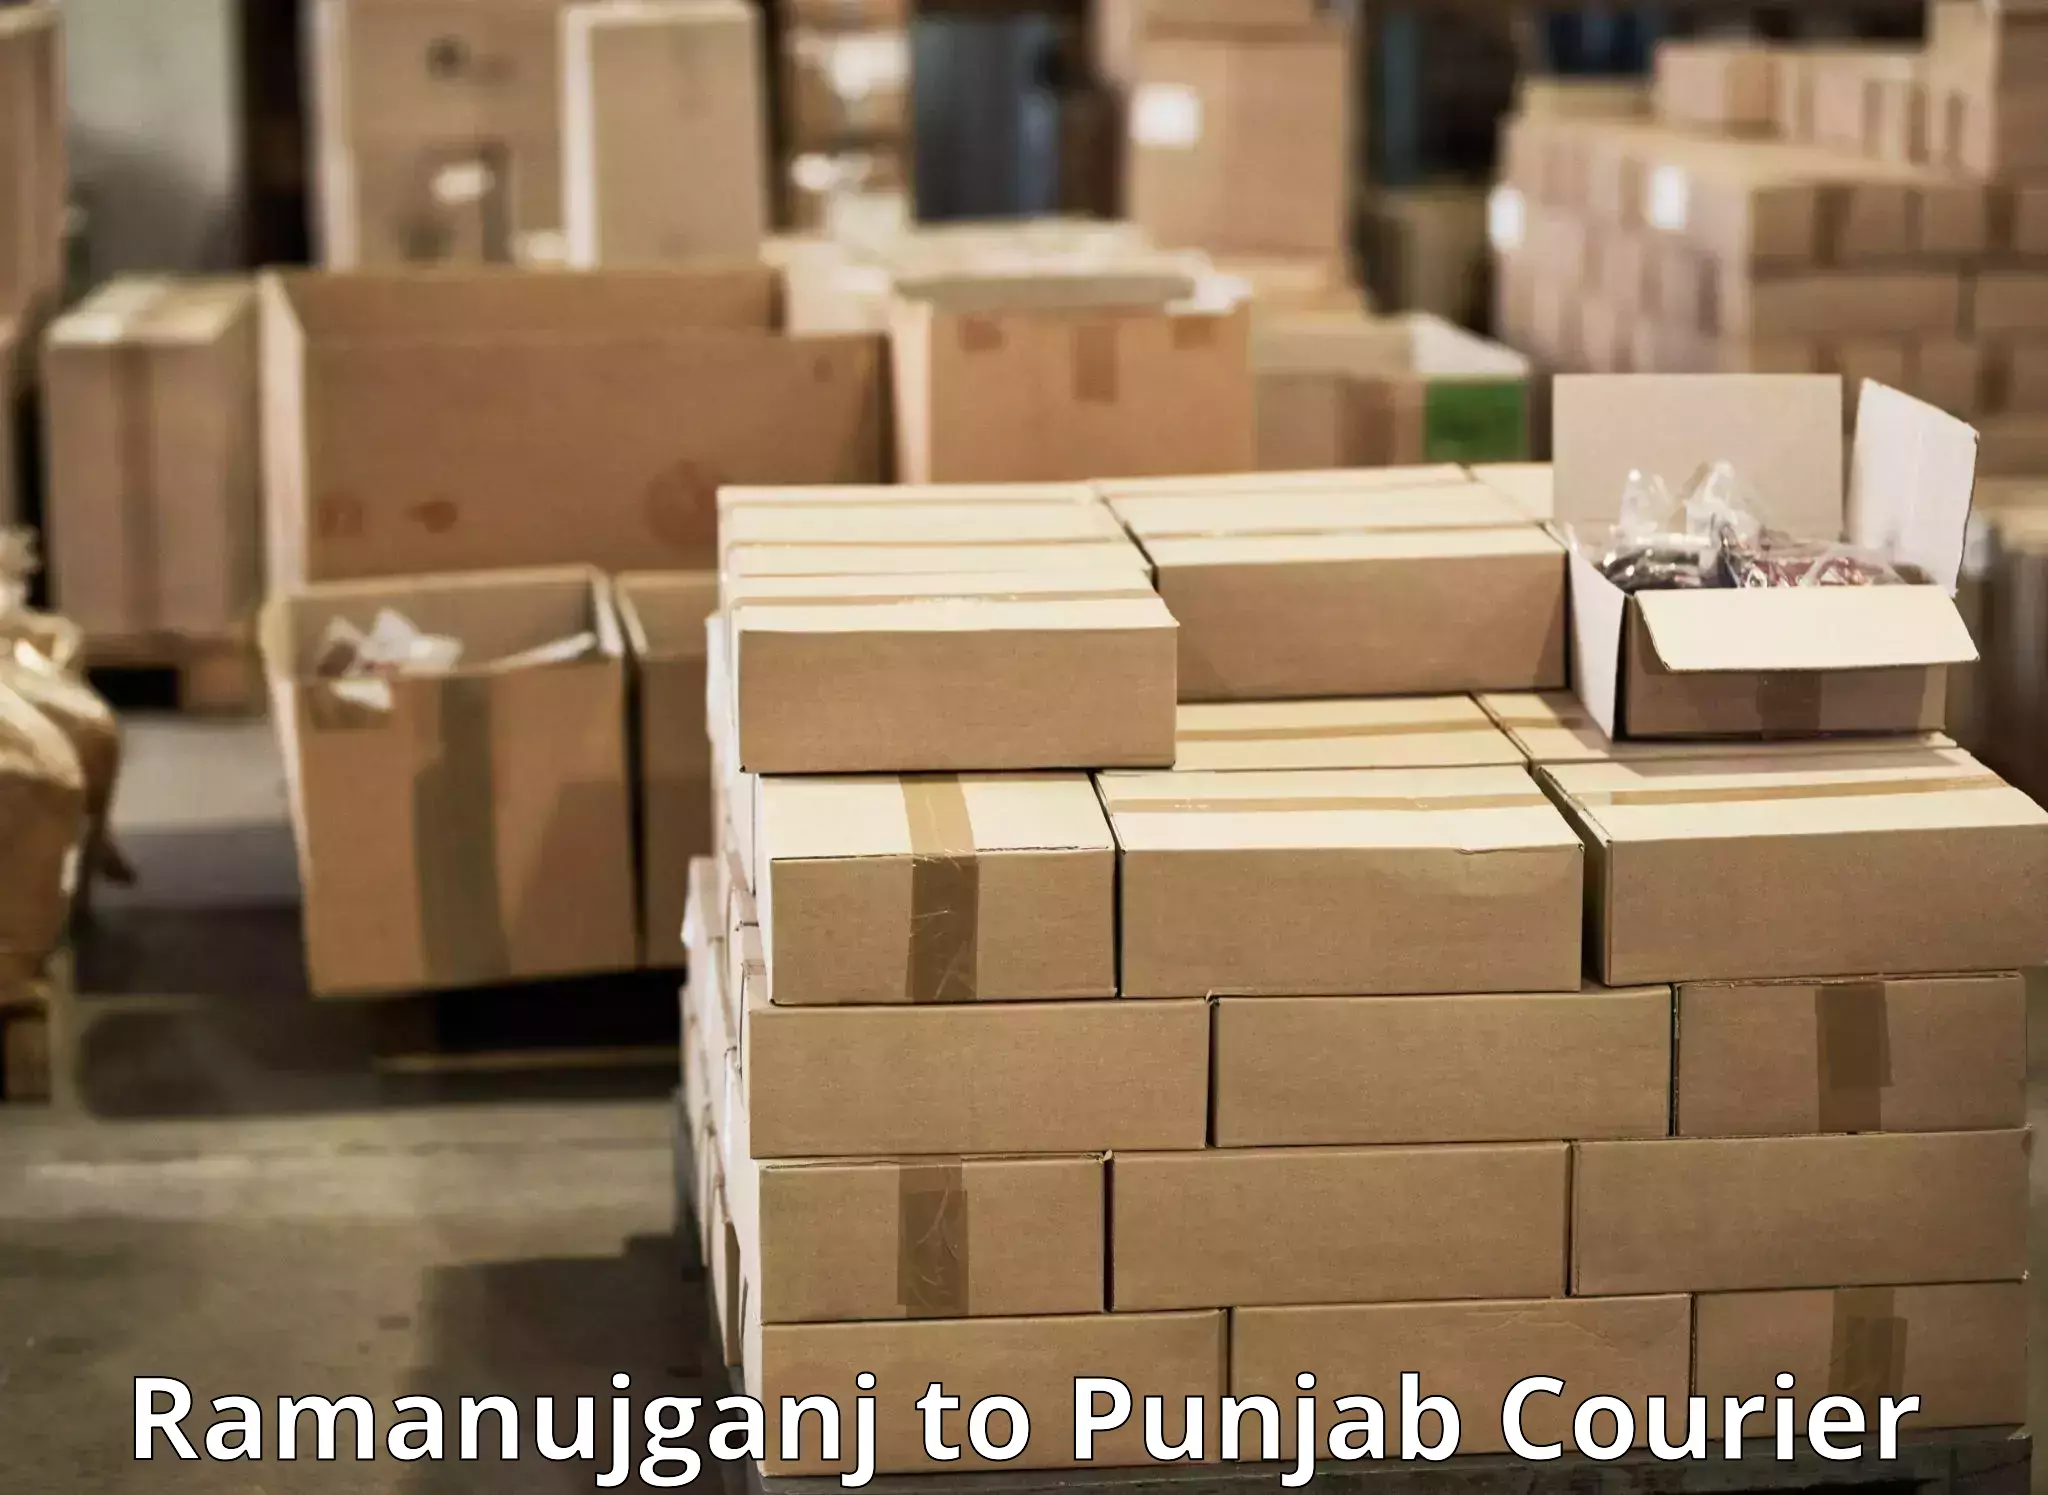 Global parcel delivery Ramanujganj to Mohali